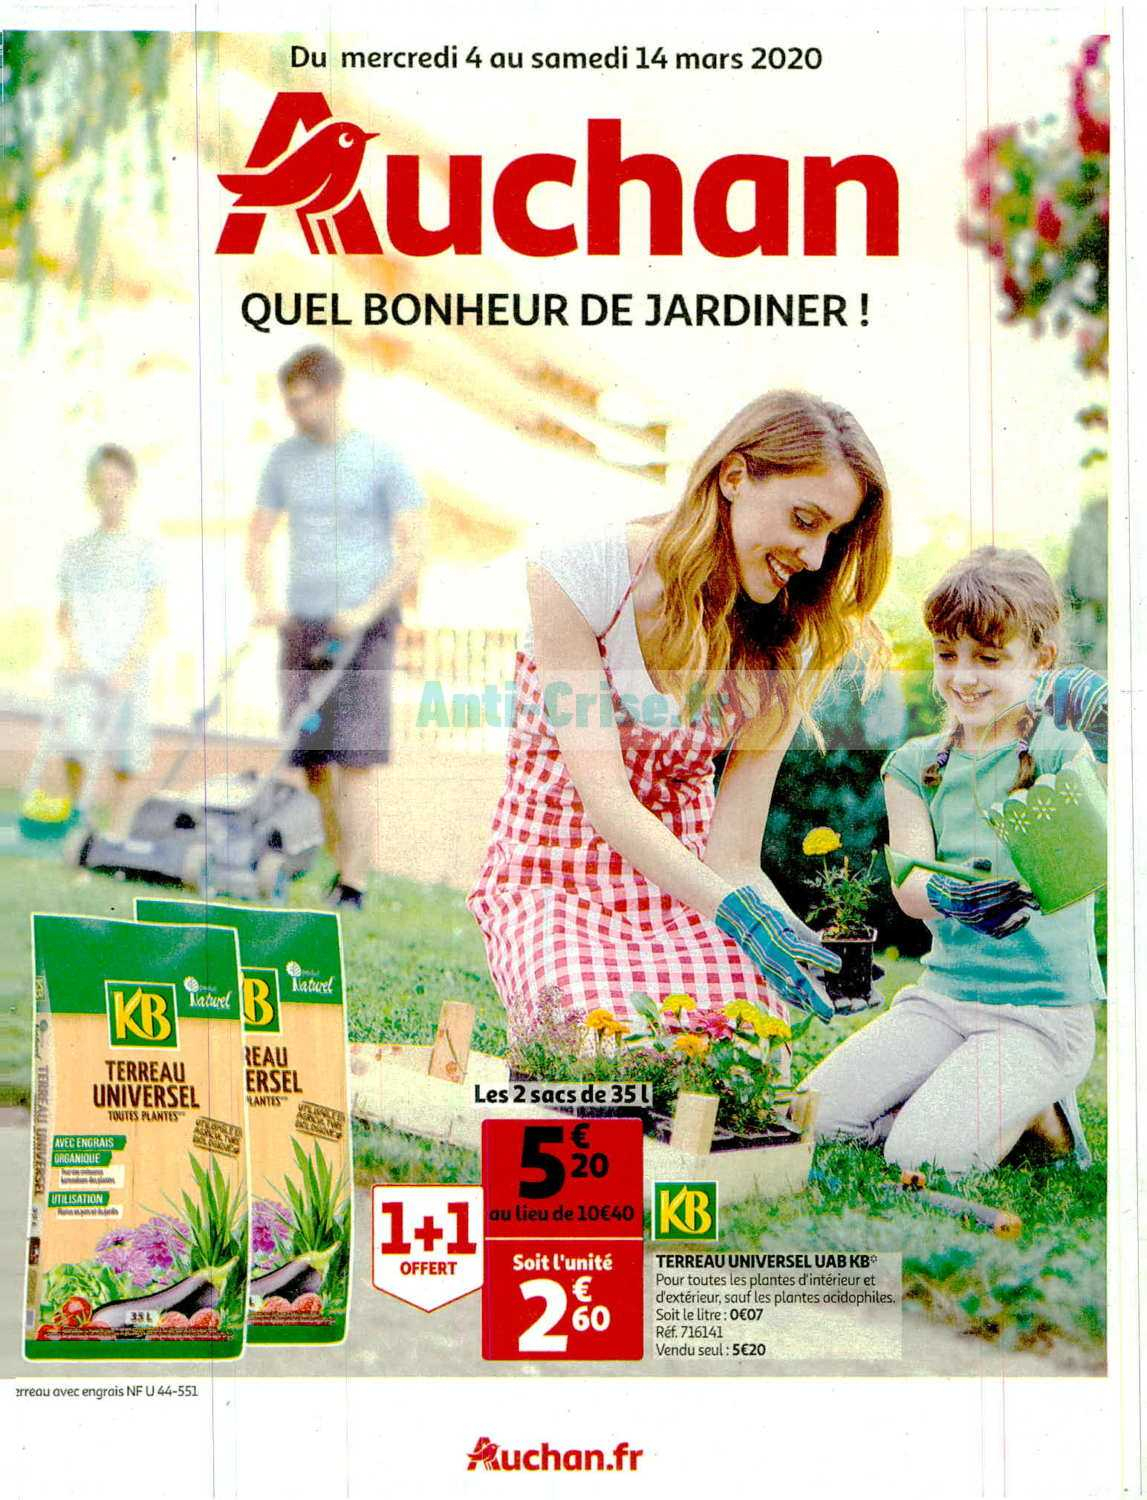 Catalogue Auchan Du 04 Au 14 Mars 2020 (Jardin) - Catalogues ... intérieur Promo Salon De Jardin Auchan